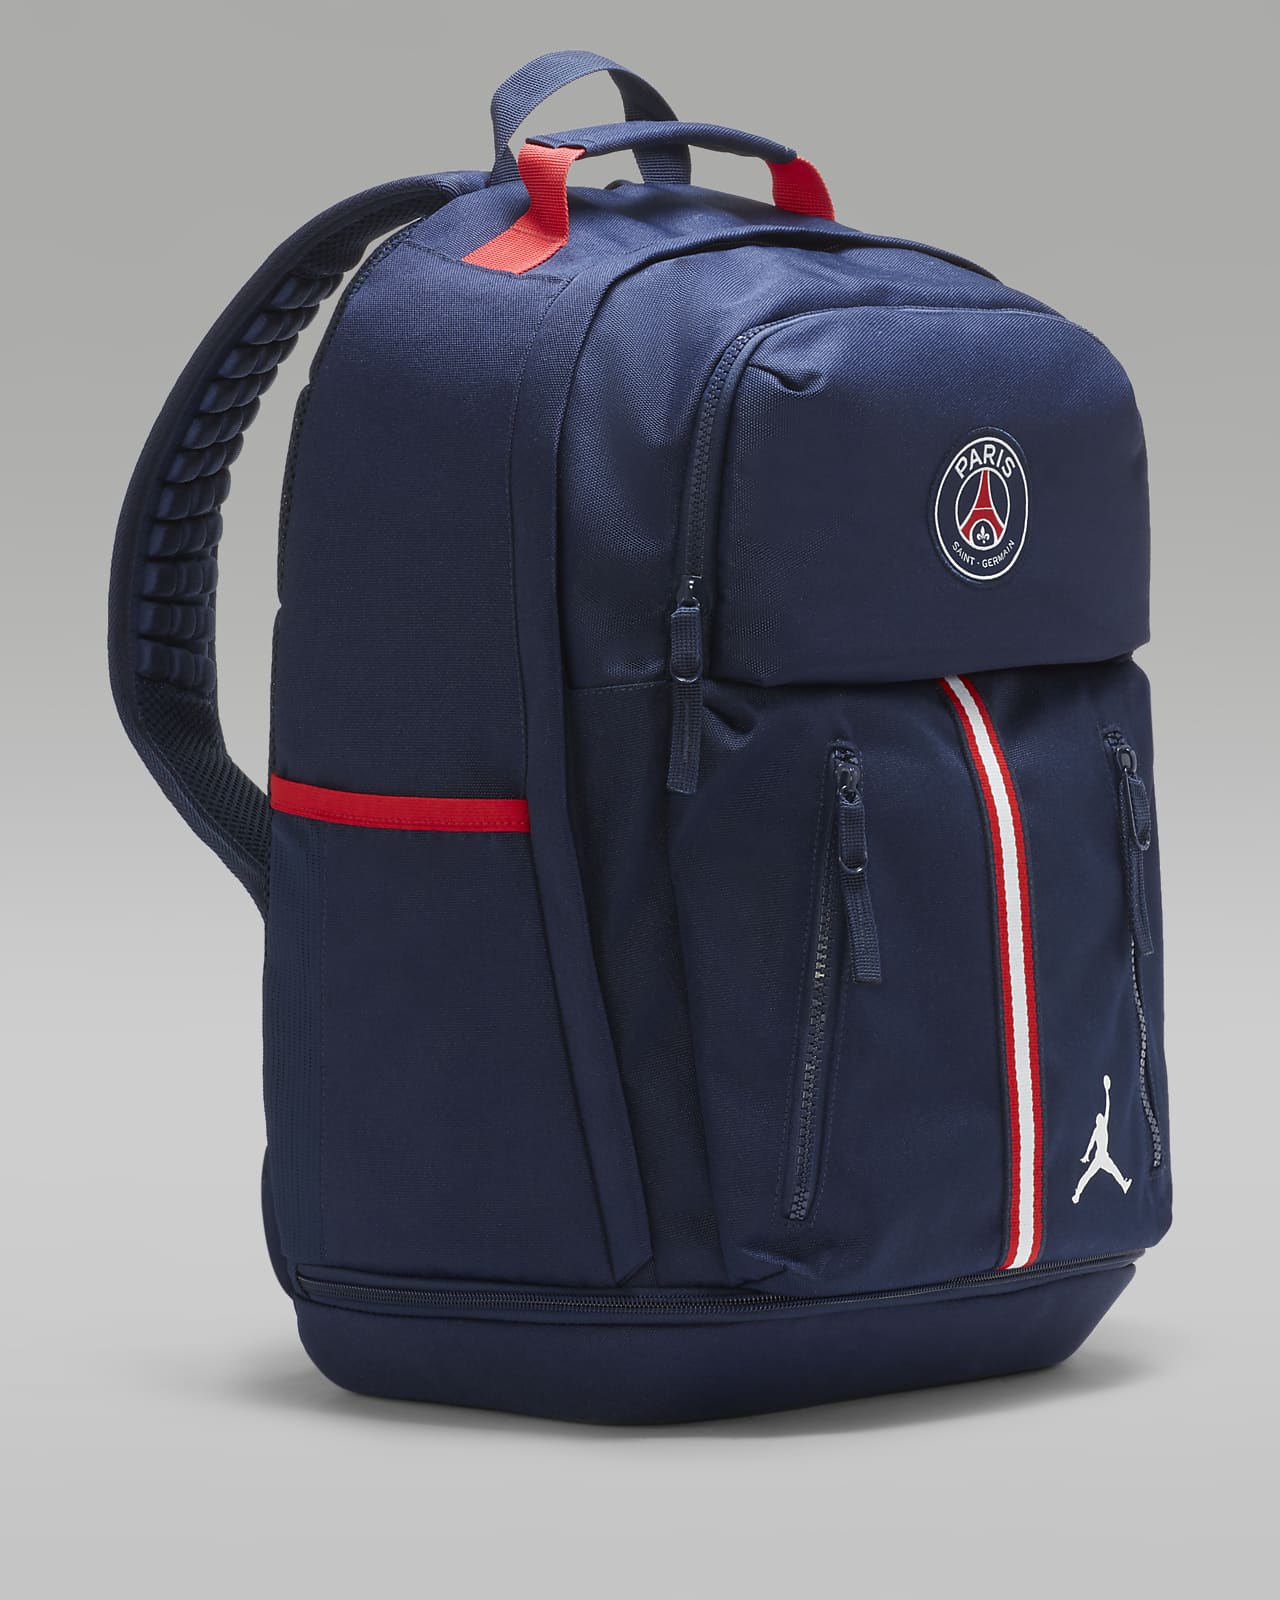 Jordan Paris Saint-Germain Essentials Backpack.